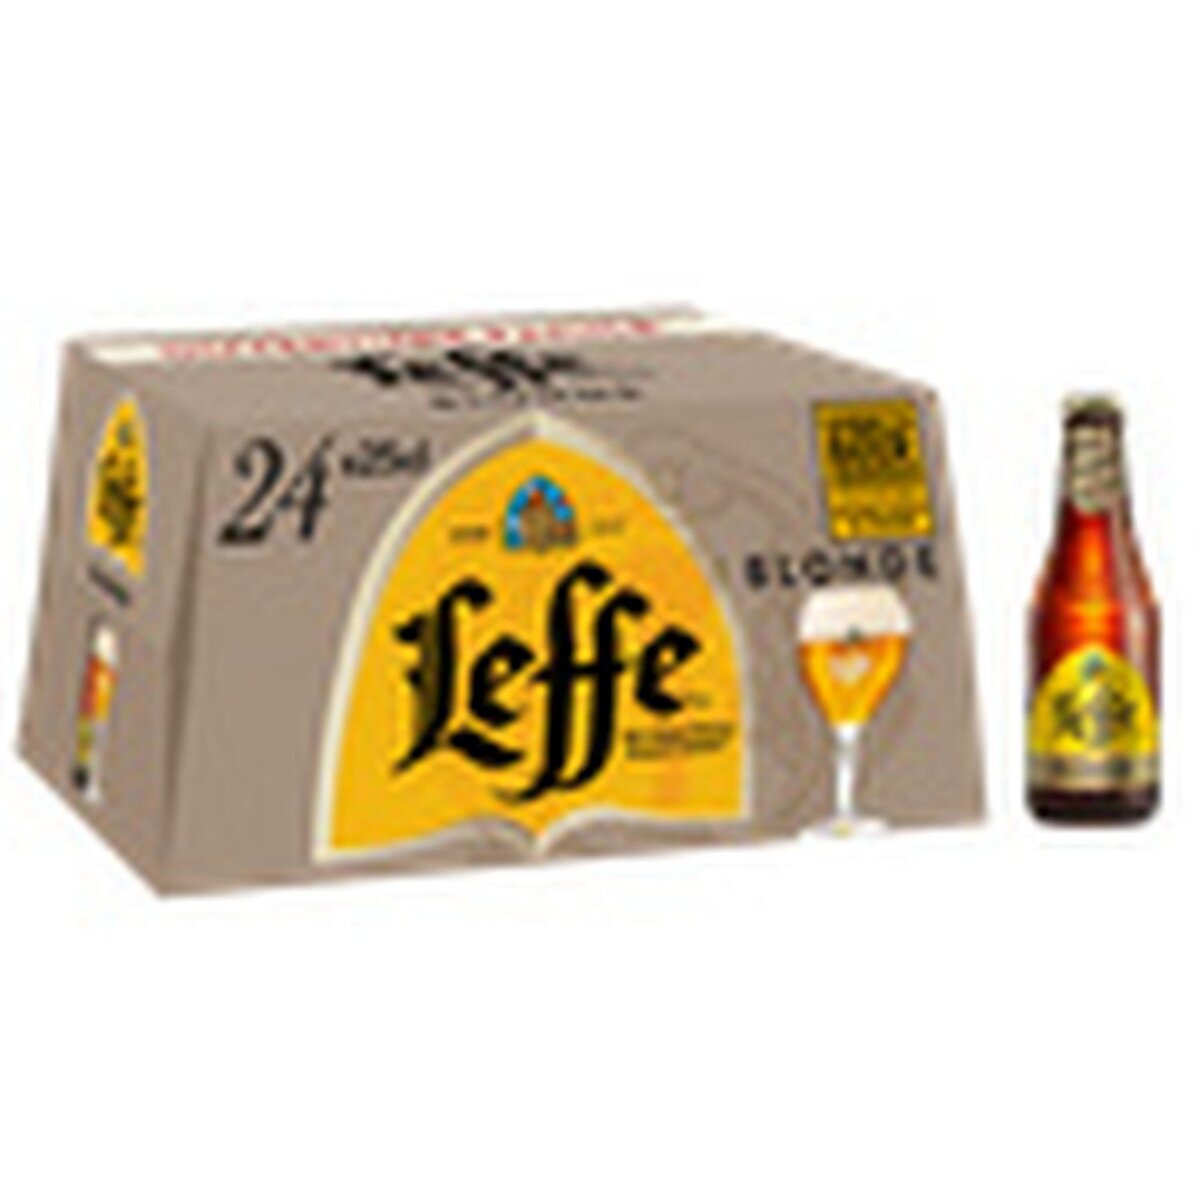 LEFFE Bière blonde 6,6% bouteilles 24x25cl